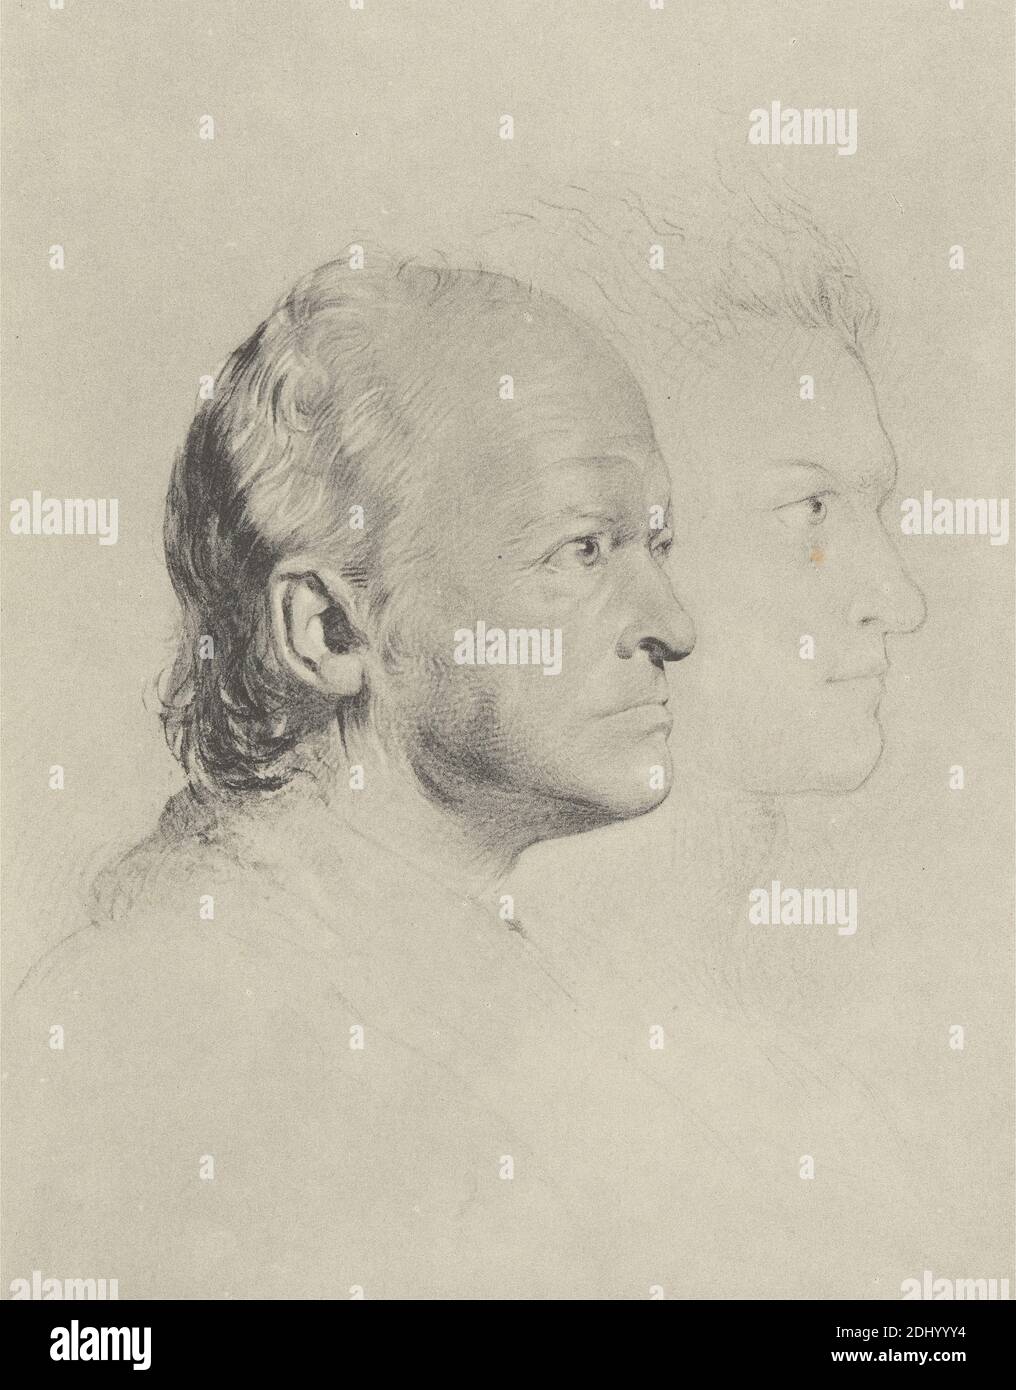 Riproduzione di "William Blake in Youth and Age", Stampa realizzata da George Richmond, 1809–1896, British, dopo Frederick Tatham, 1805–1878, British, Circle of William Blake, 1757–1827, British, ca. 1830, litografia con tinta grigia su carta di wove di spessore moderato, liscia, crema, foglio: 10 11/16 x 7 13/16 pollici (27.2 x 19.9 cm) e immagine: 5 3/4 x 4 1/2 pollici (14.6 x 11.4 cm), testa, contorno, ritratto, profilo, tempo, gioventù Foto Stock